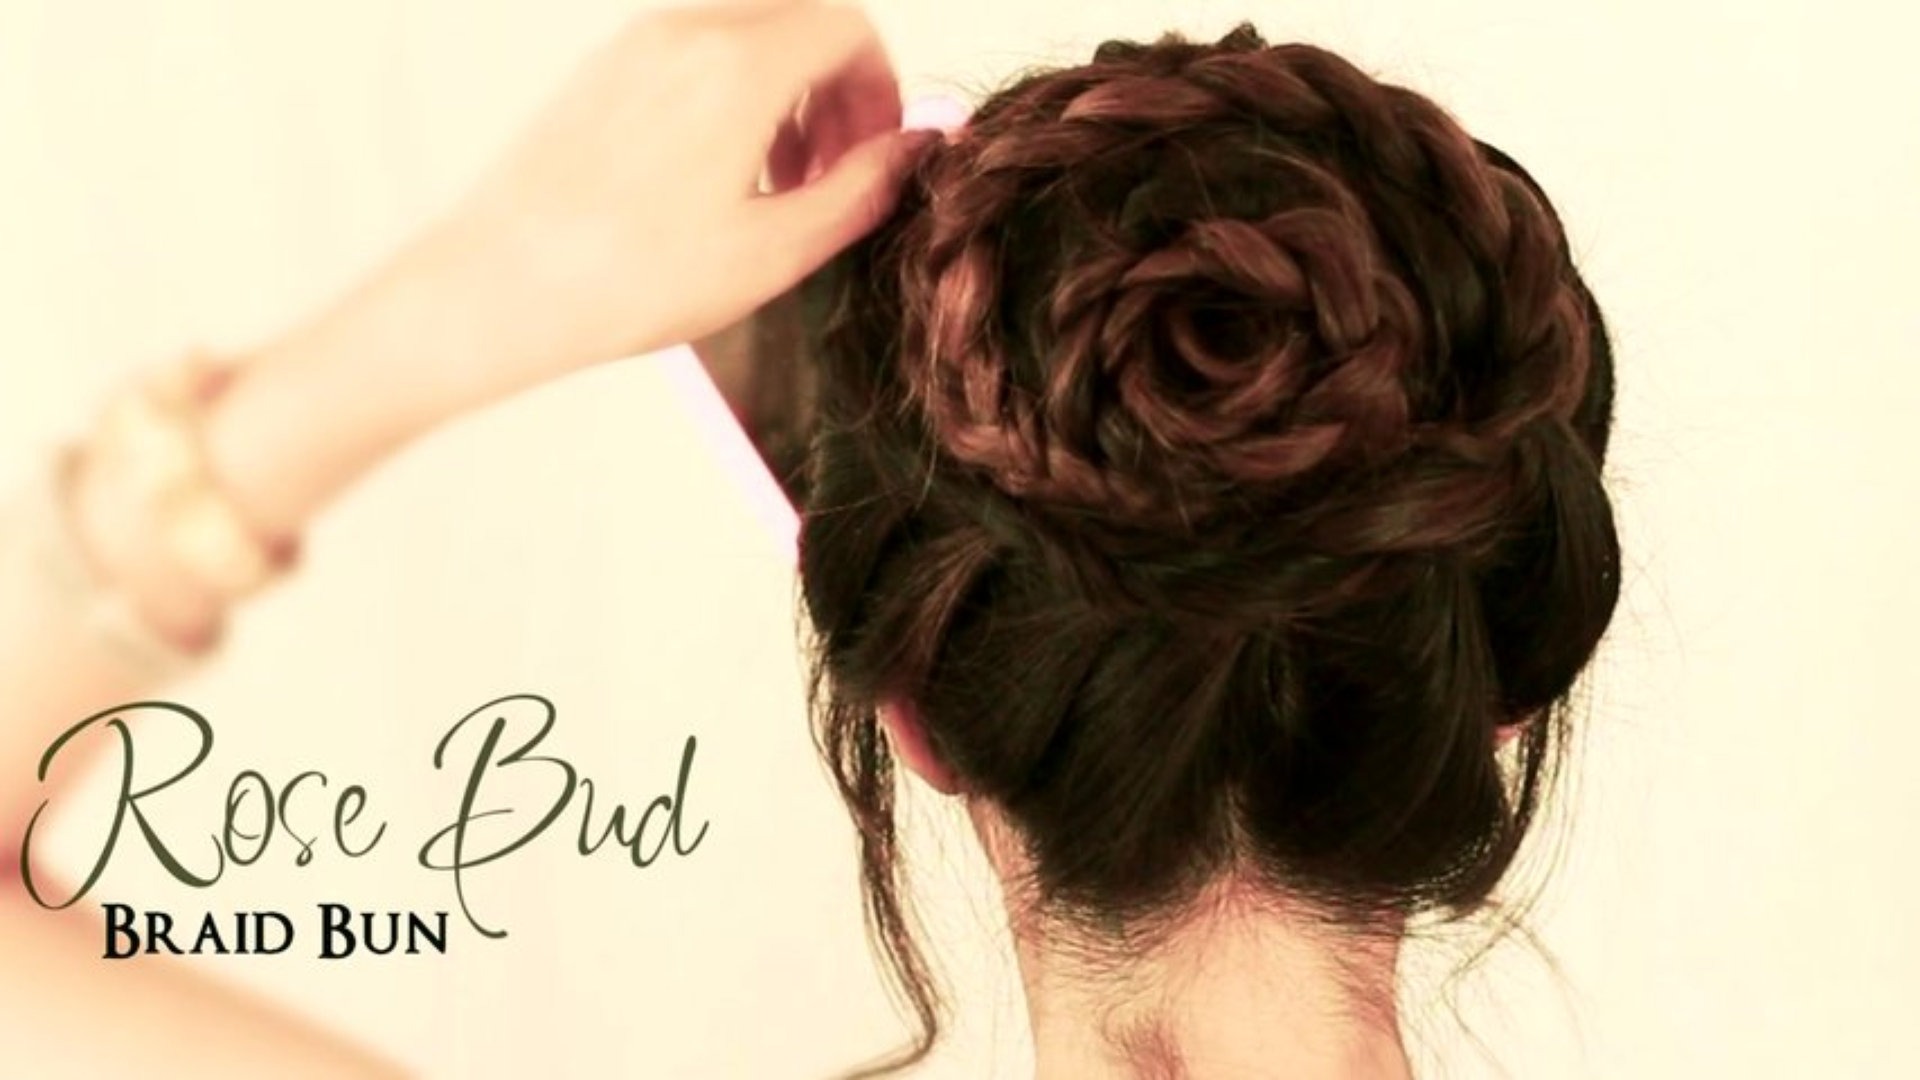 How to Do a Rose Bud Braid Bun | Cute Hairstyles for Medium Long ...